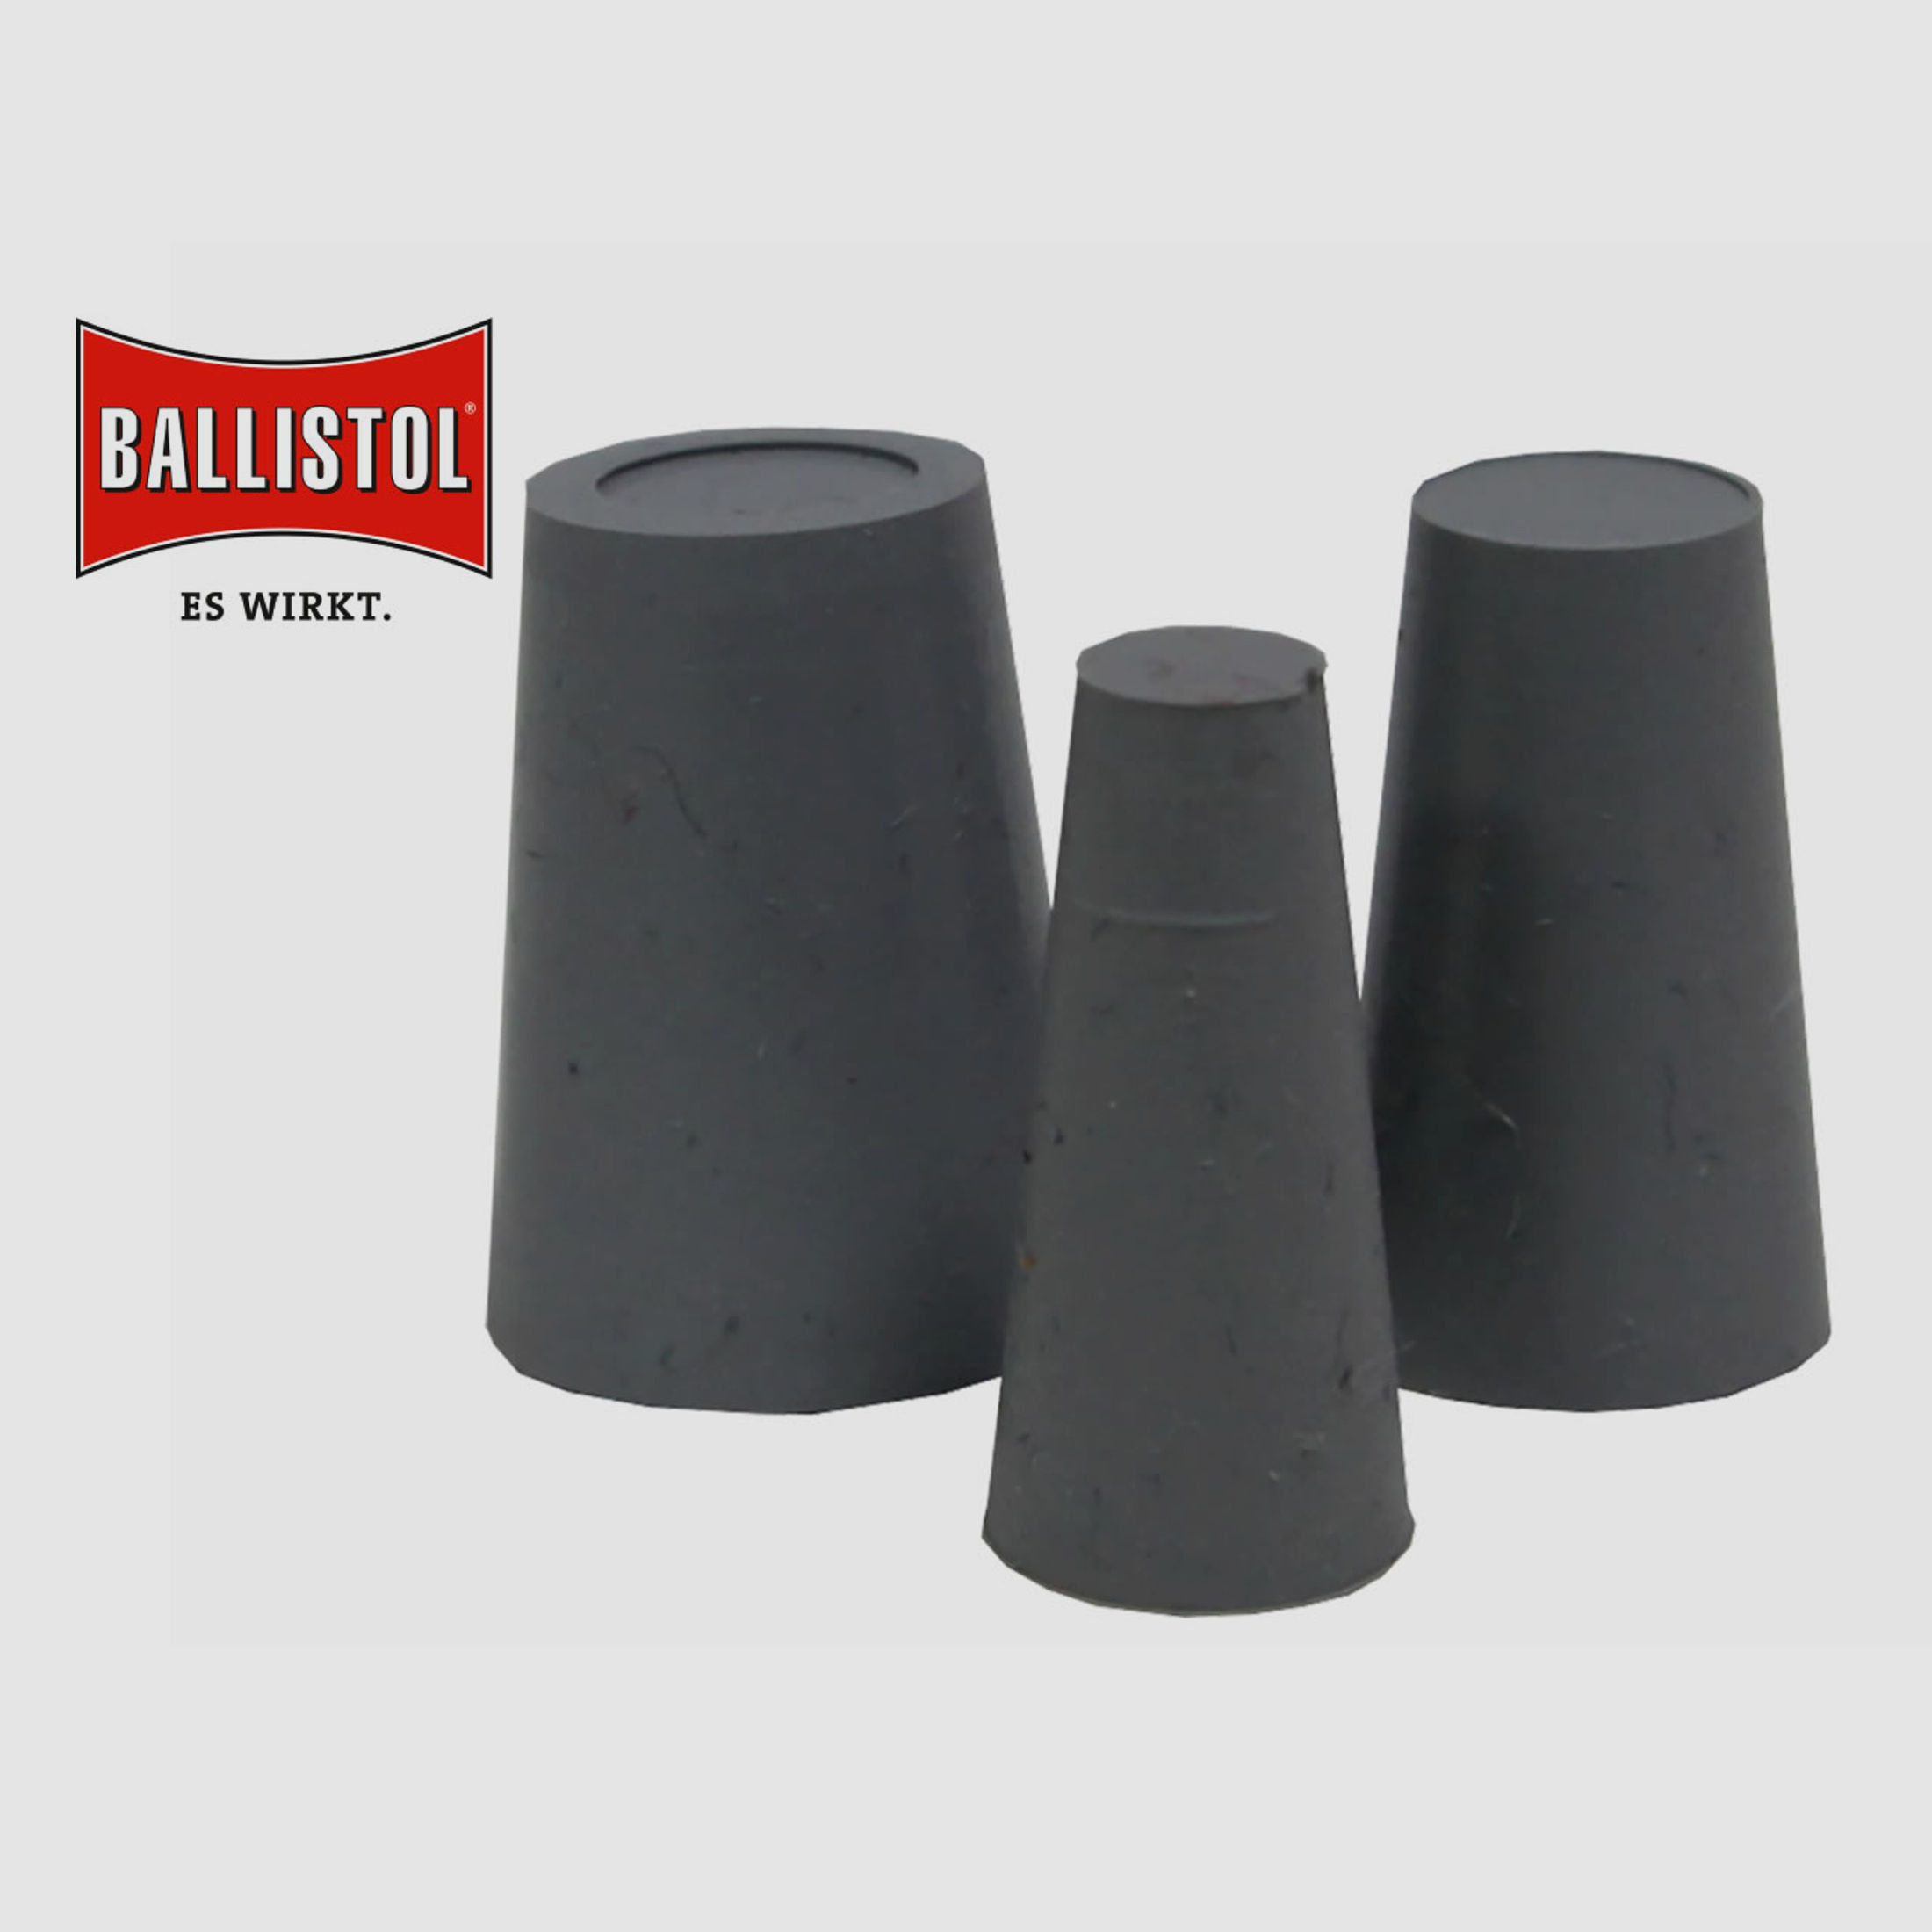 BALLISTOL Gummikorken, 3er Set, konisch, von 5 - 14,5 mm Durchmesser